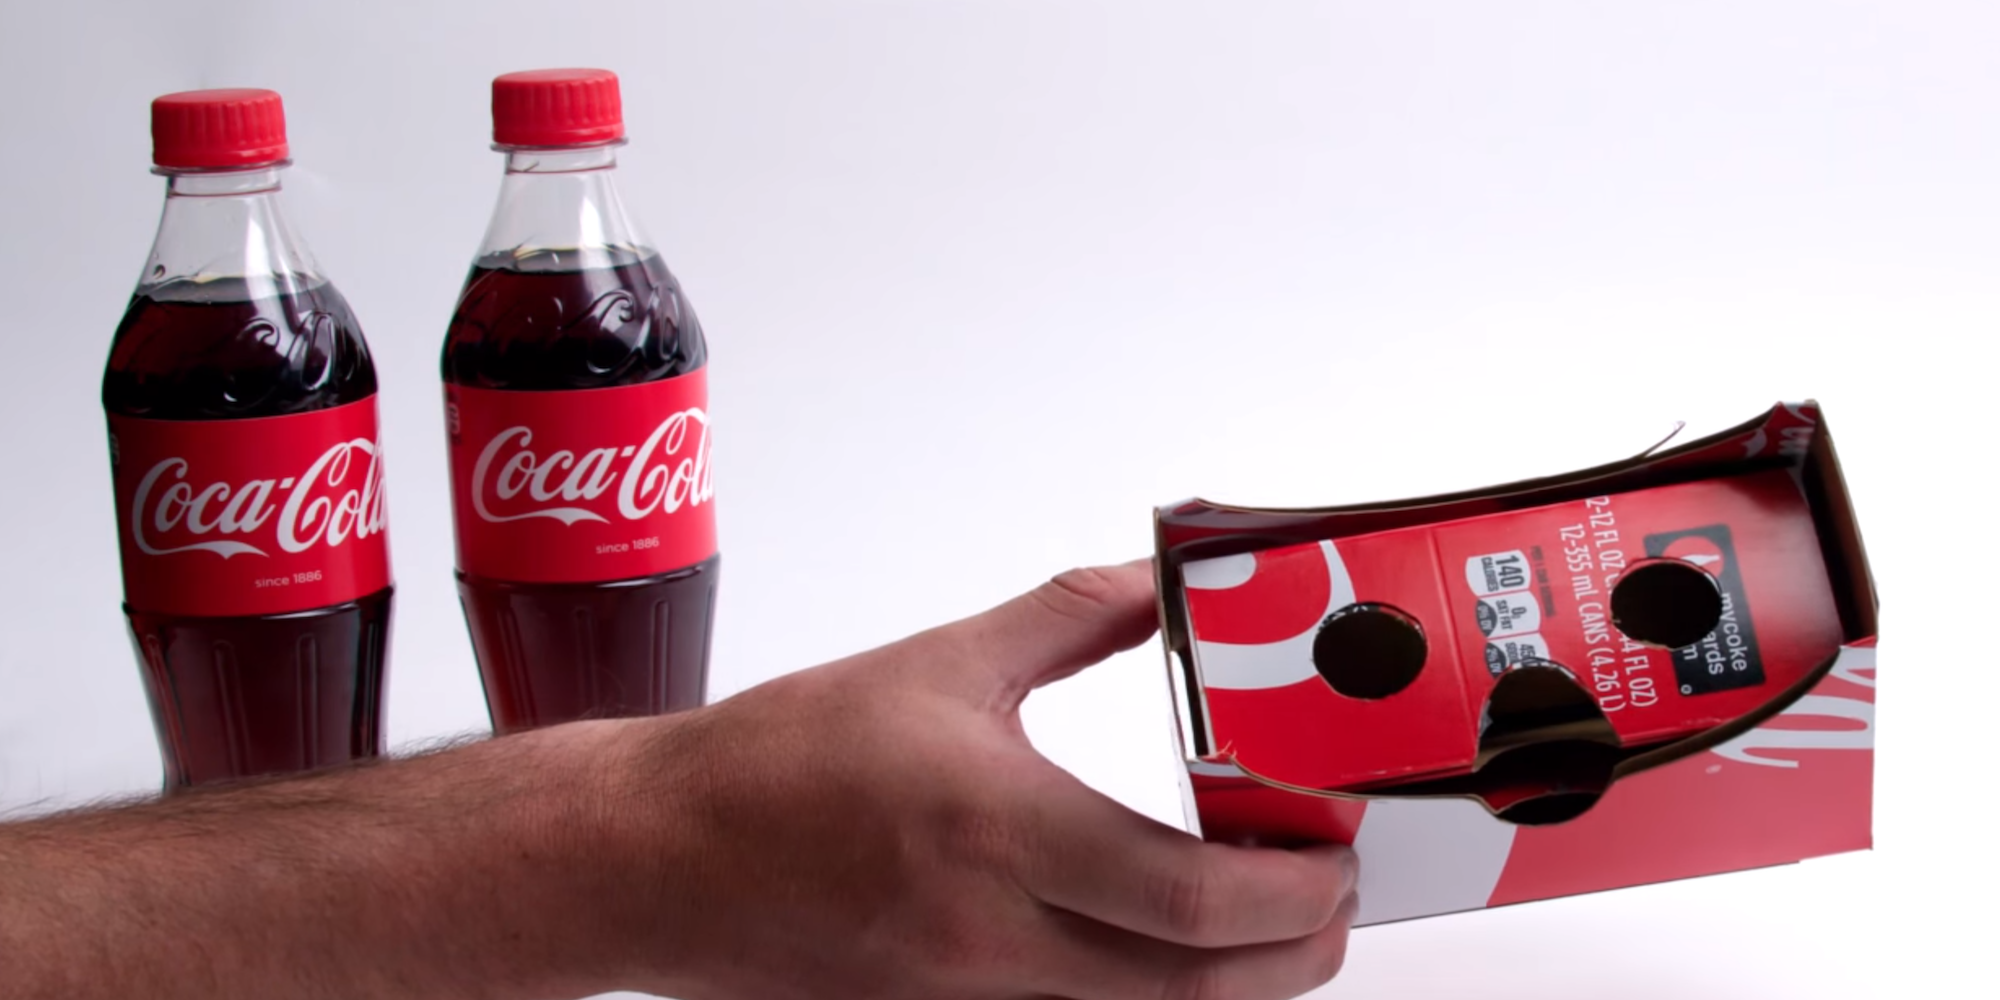 Coca Cola iPhonen virtuaalitodellisuuden katseluohjelma - iDevice.ro